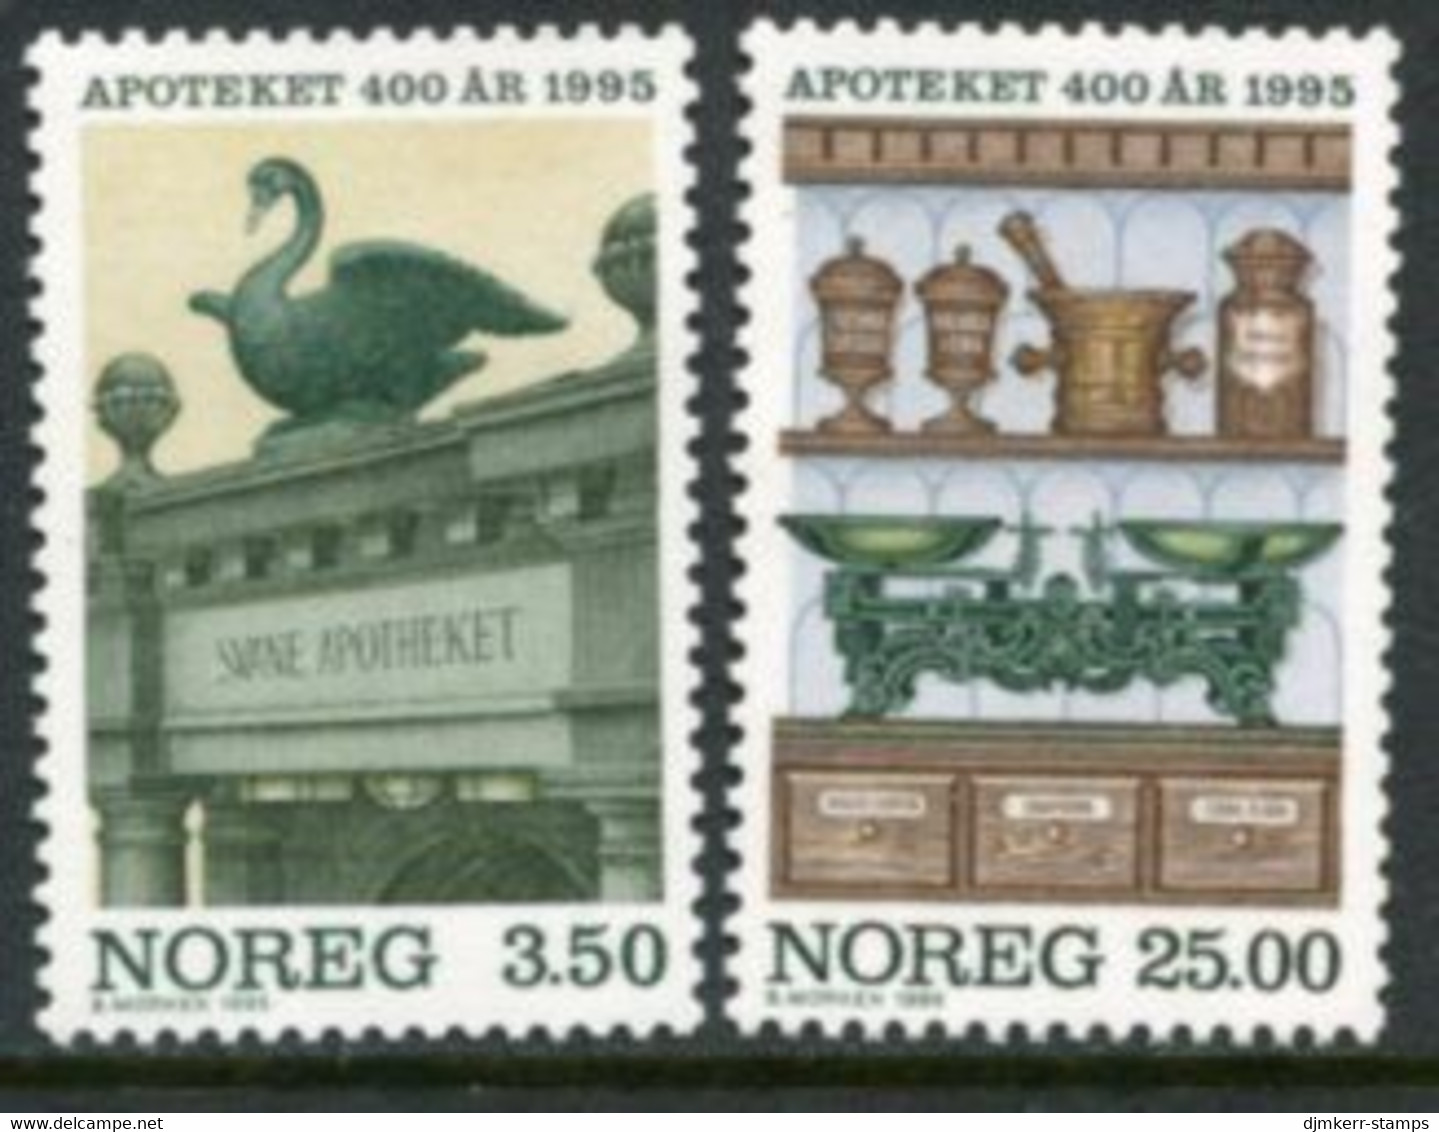 NORWAY 1995 Pharmacies In Norway MNH / **.   Michel 1172-73 - Ongebruikt